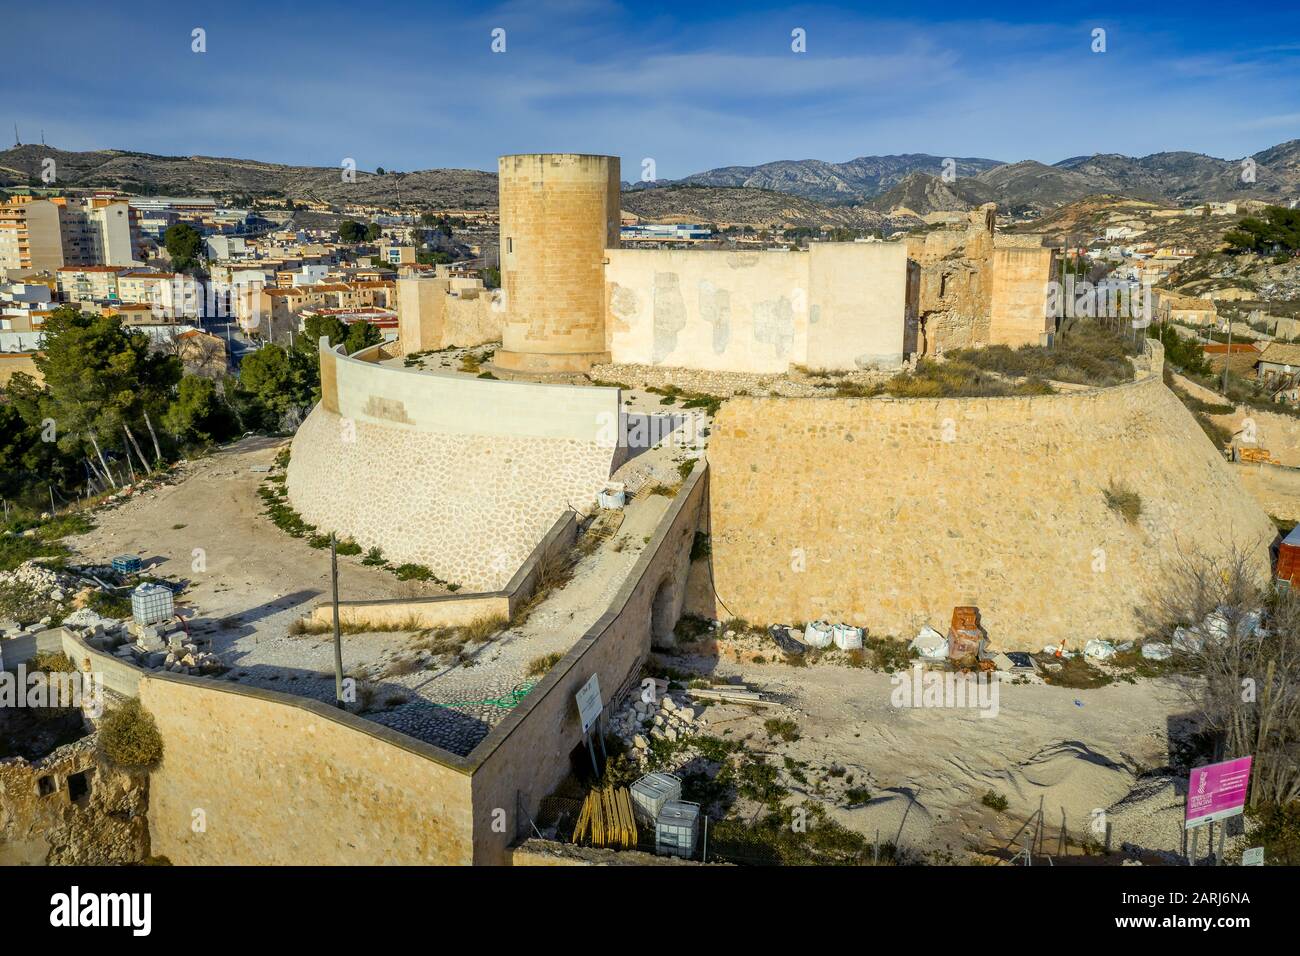 Veduta panoramica aerea del castello medievale di Elda sopra la città con mura, torri e porte parzialmente restaurate in pietra calcarea bianca in Spagna Foto Stock